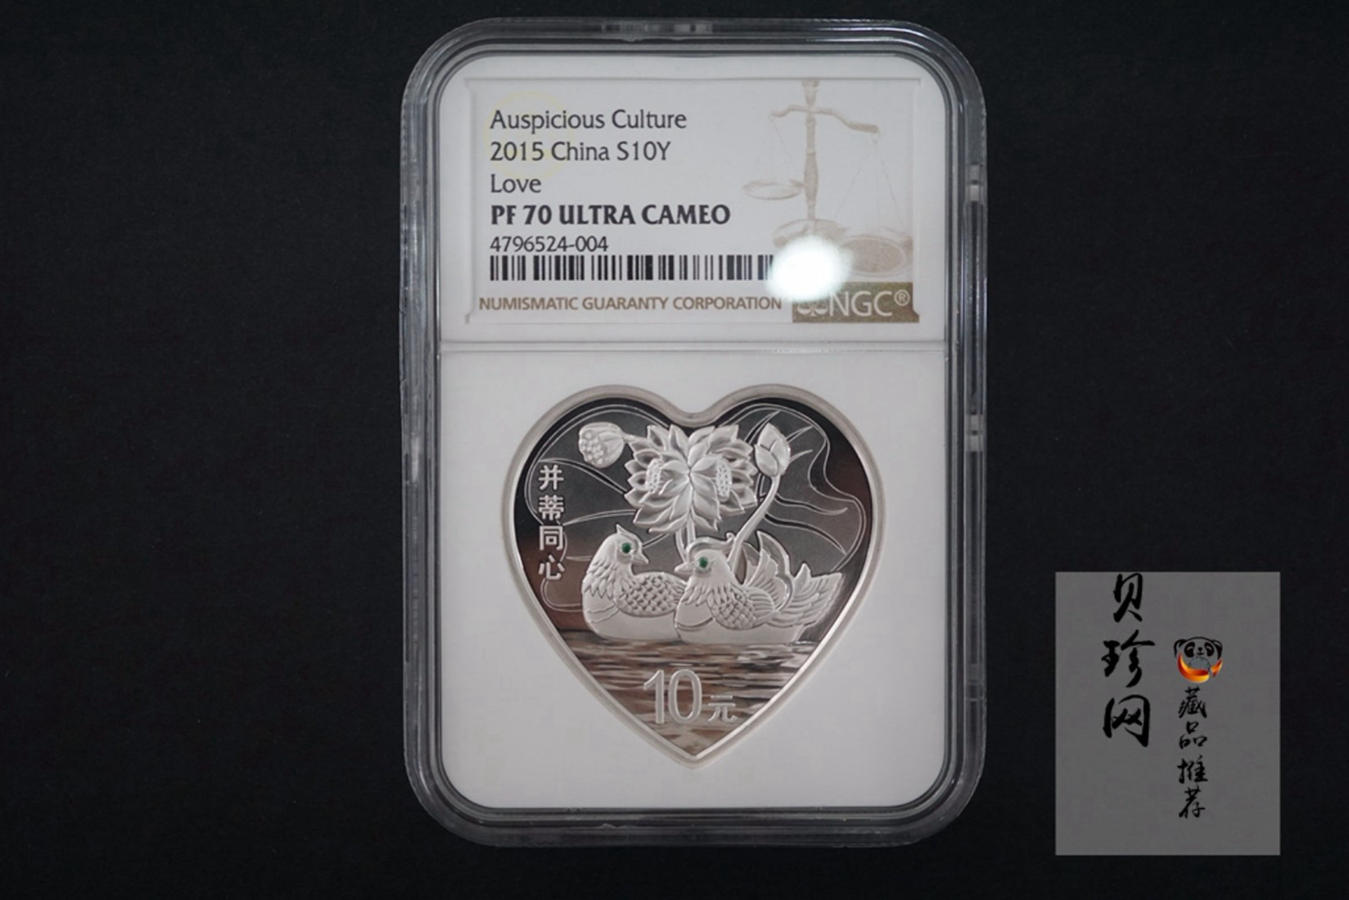 【150308】2015年吉祥文化-并蒂同心1盎司精制银币